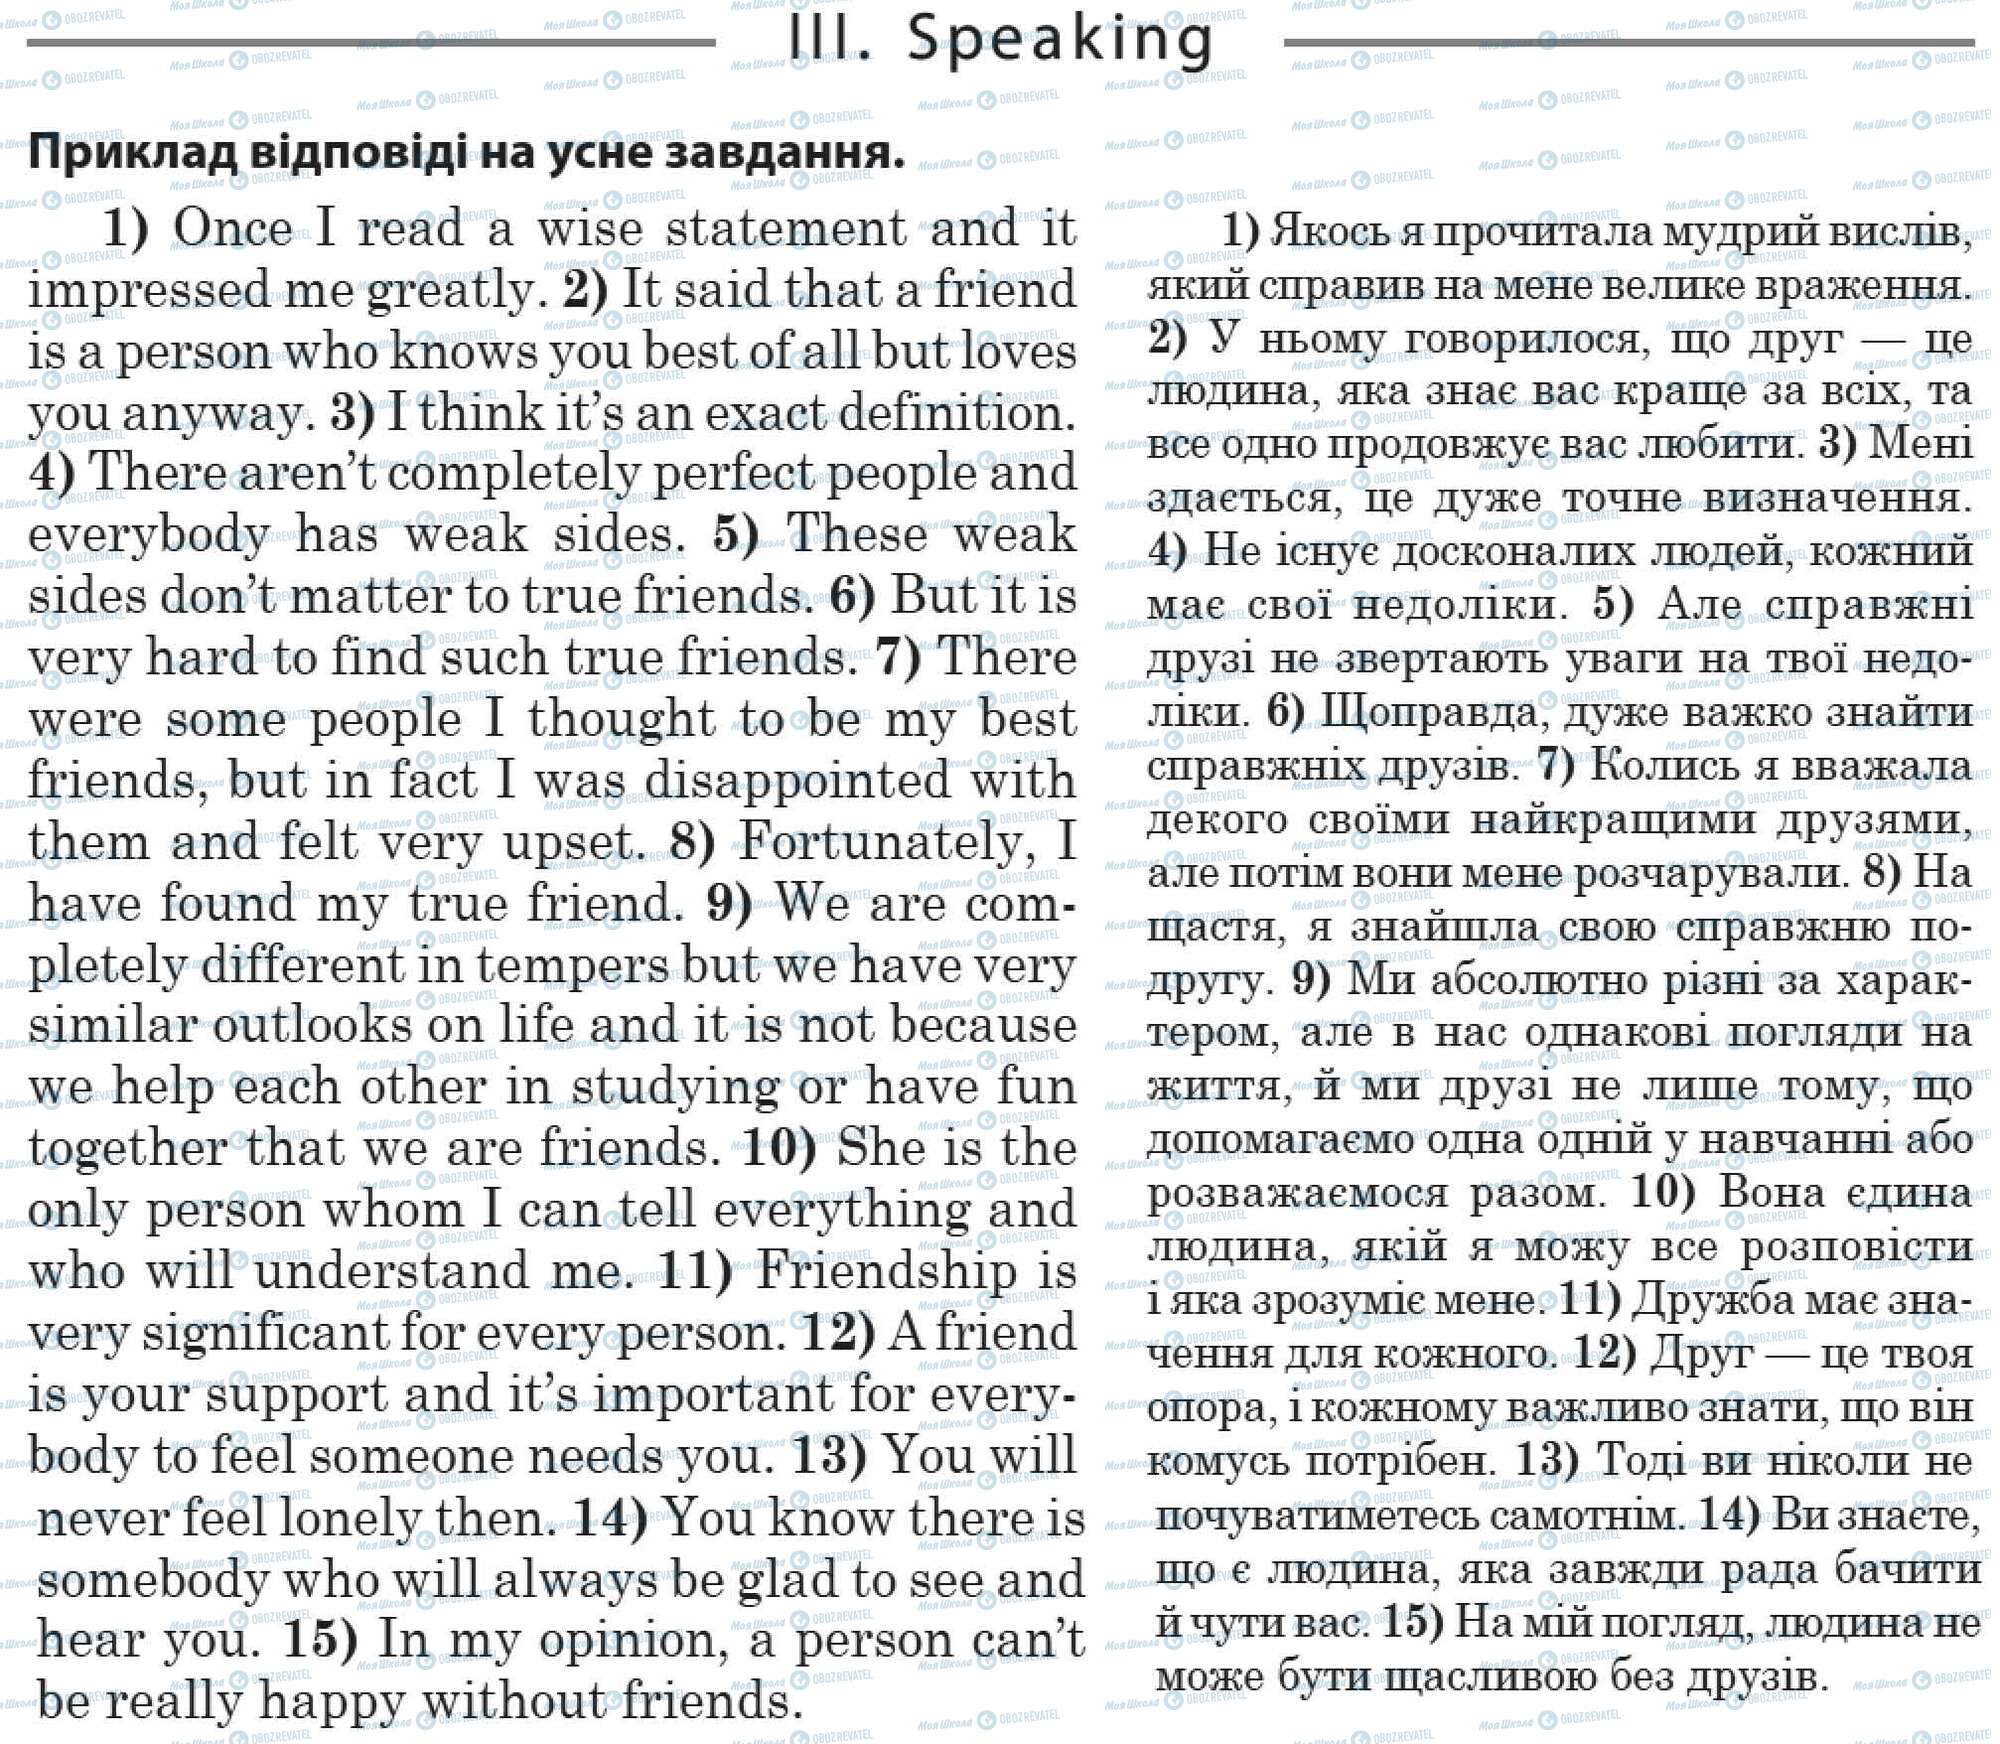 ДПА Англійська мова 11 клас сторінка 3. Speaking